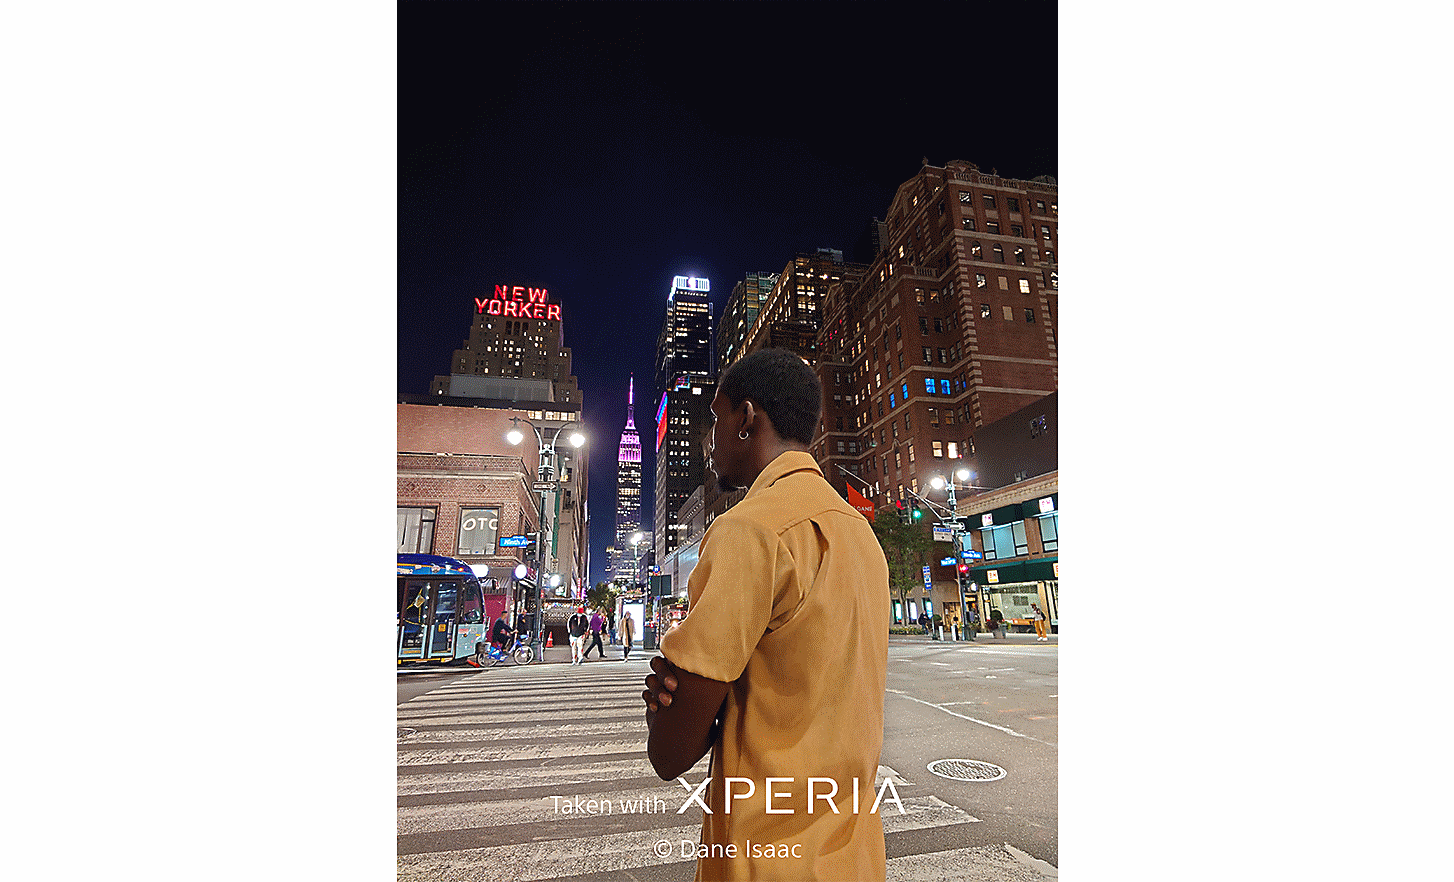 Đường phố về đêm có một người đàn ông ở tiền cảnh. Trên ảnh có dòng chữ "Taken with XPERIA ©Dane Isaac” (Chụp bằng XPERIA ©Dane Isaac).